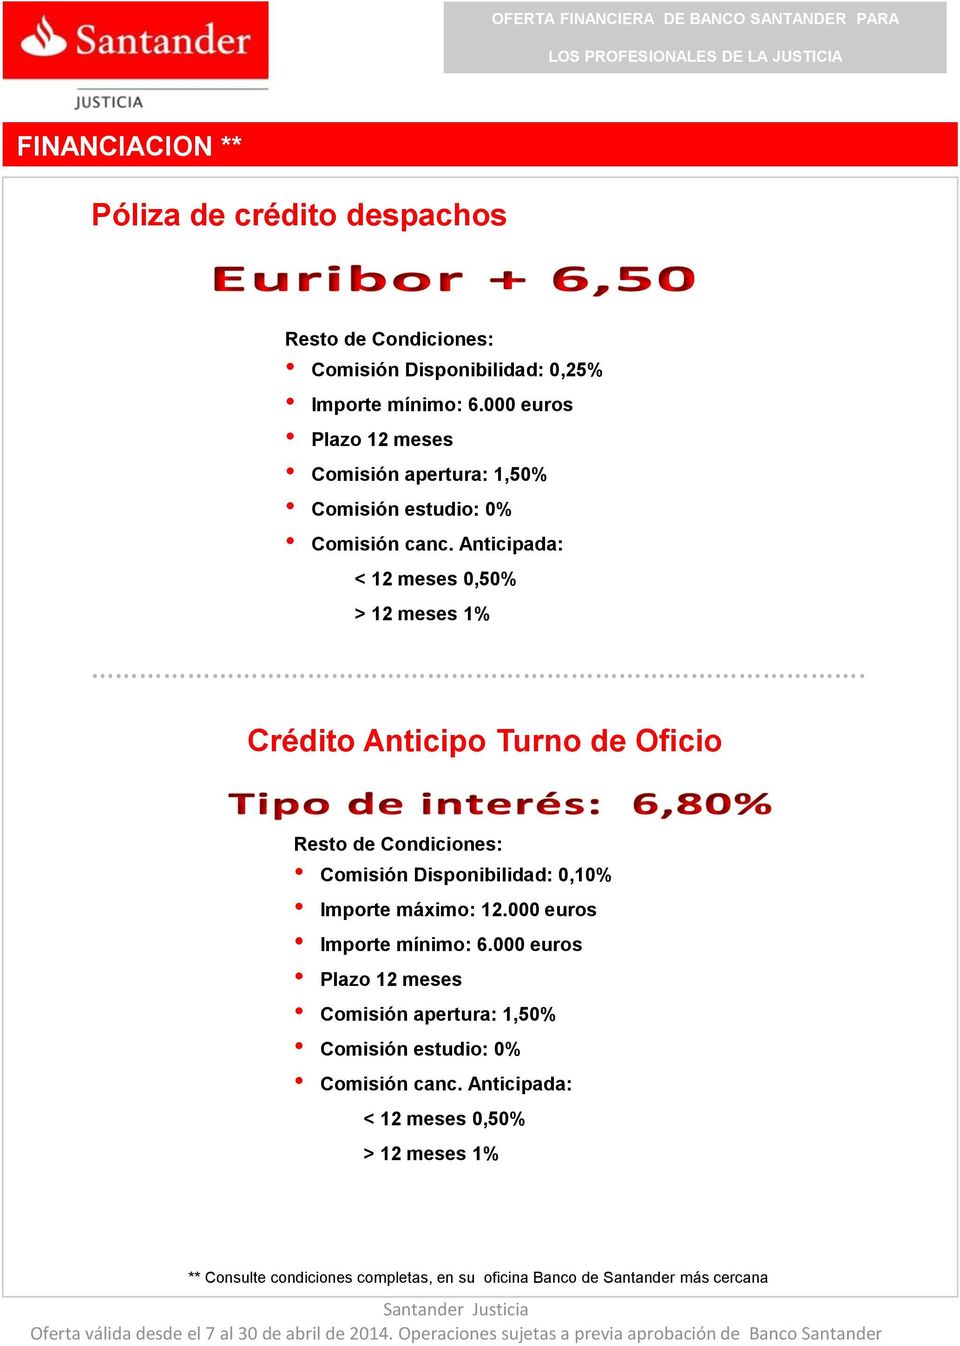 Crédito Anticipo Turno de Oficio Comisión Disponibilidad: 0,10% Importe máximo: 12.000 euros Importe mínimo: 6.